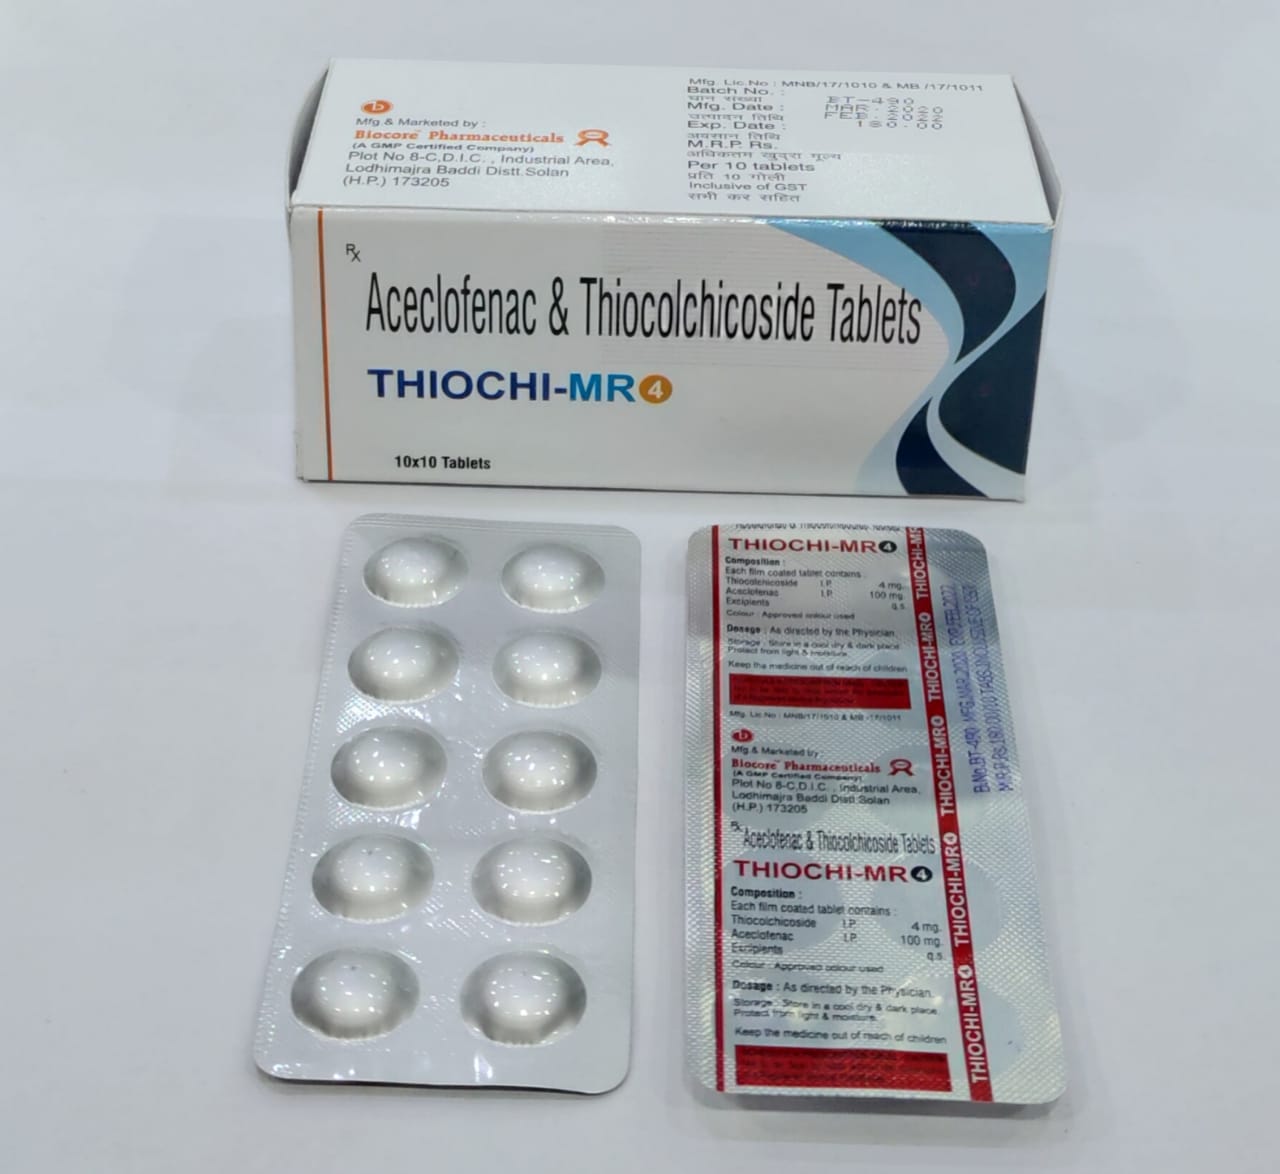 THIOCHI-MR 4MG Tablets